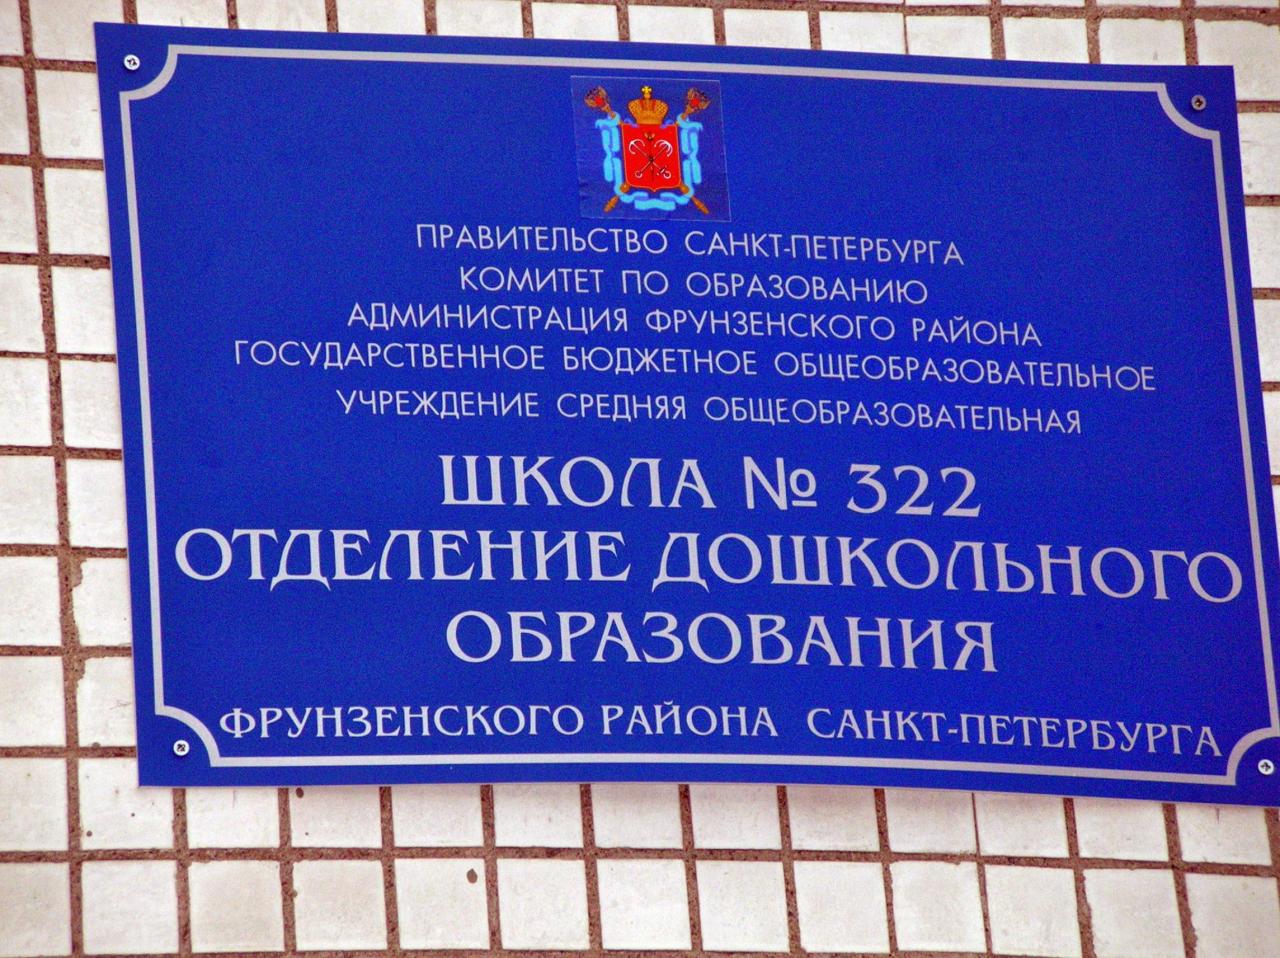 Школа 322 Фрунзенского района Санкт-Петербурга